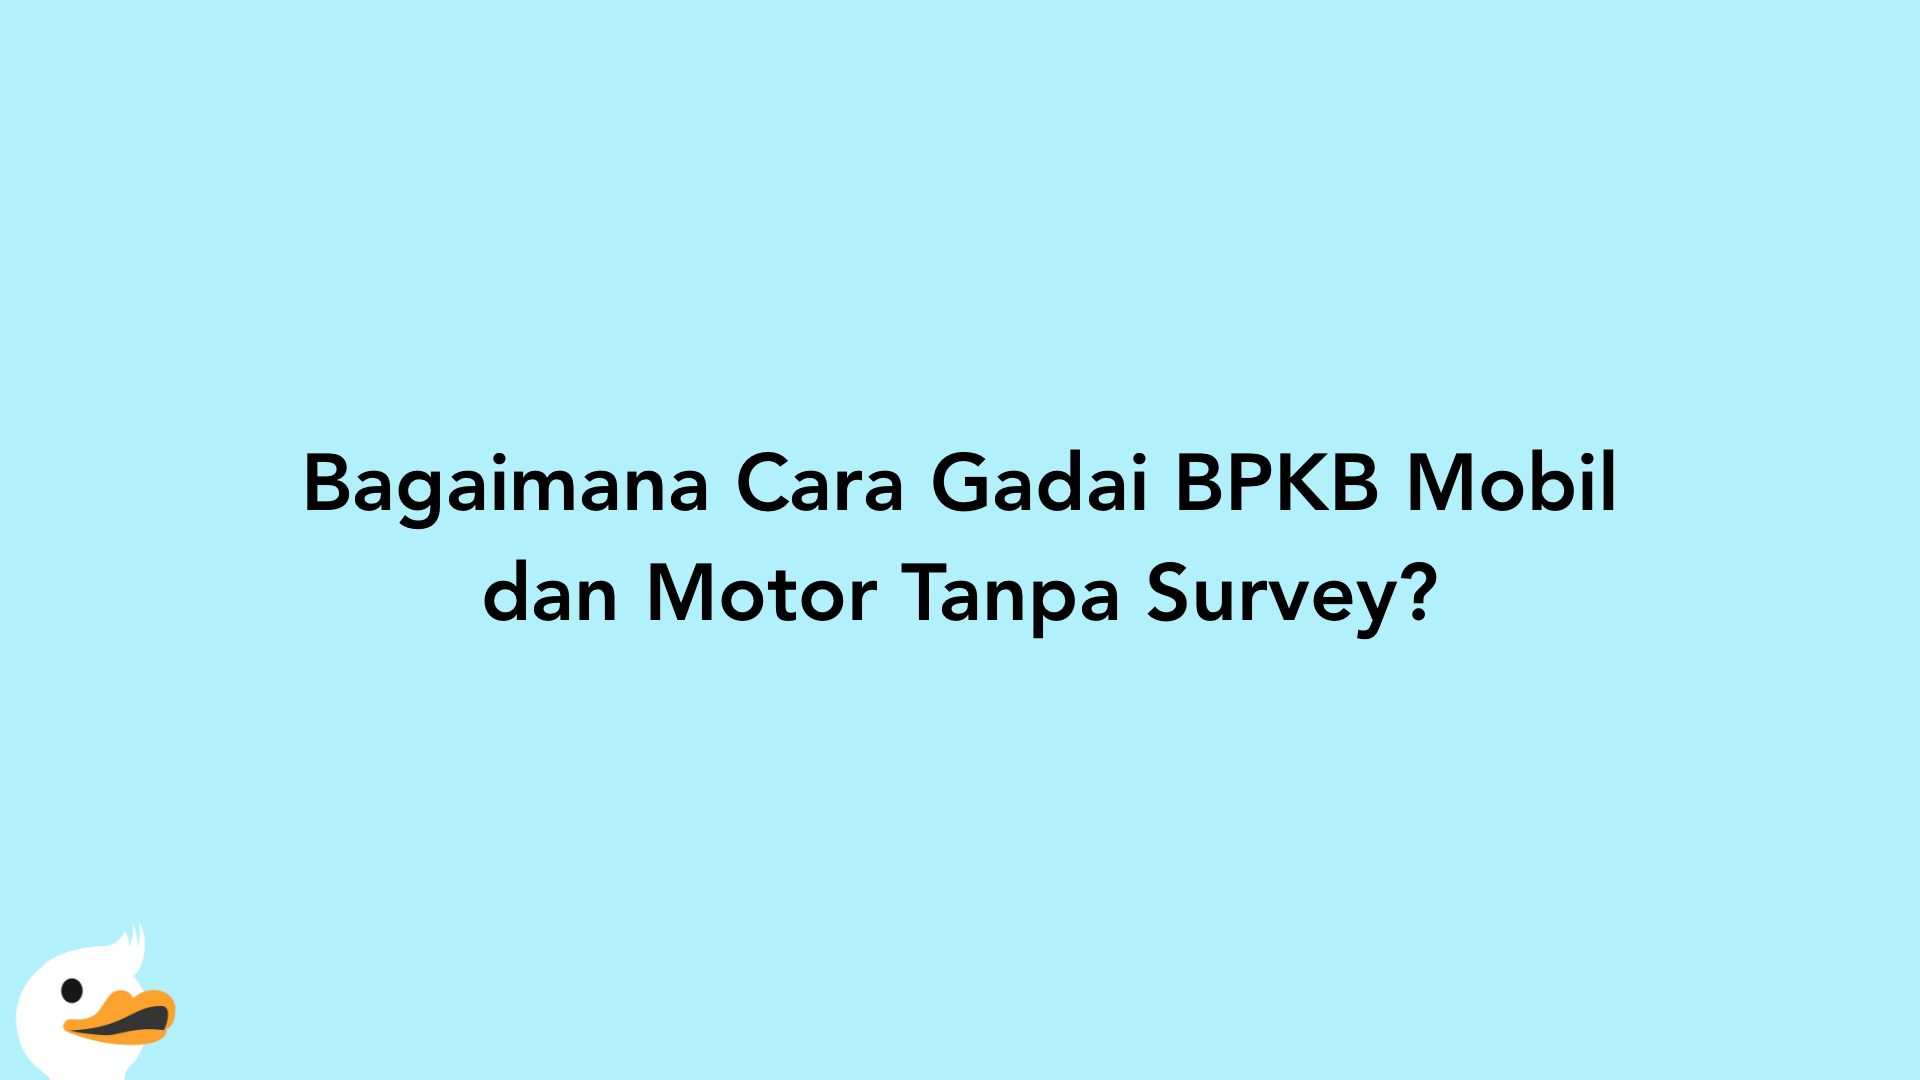 Bagaimana Cara Gadai BPKB Mobil dan Motor Tanpa Survey?